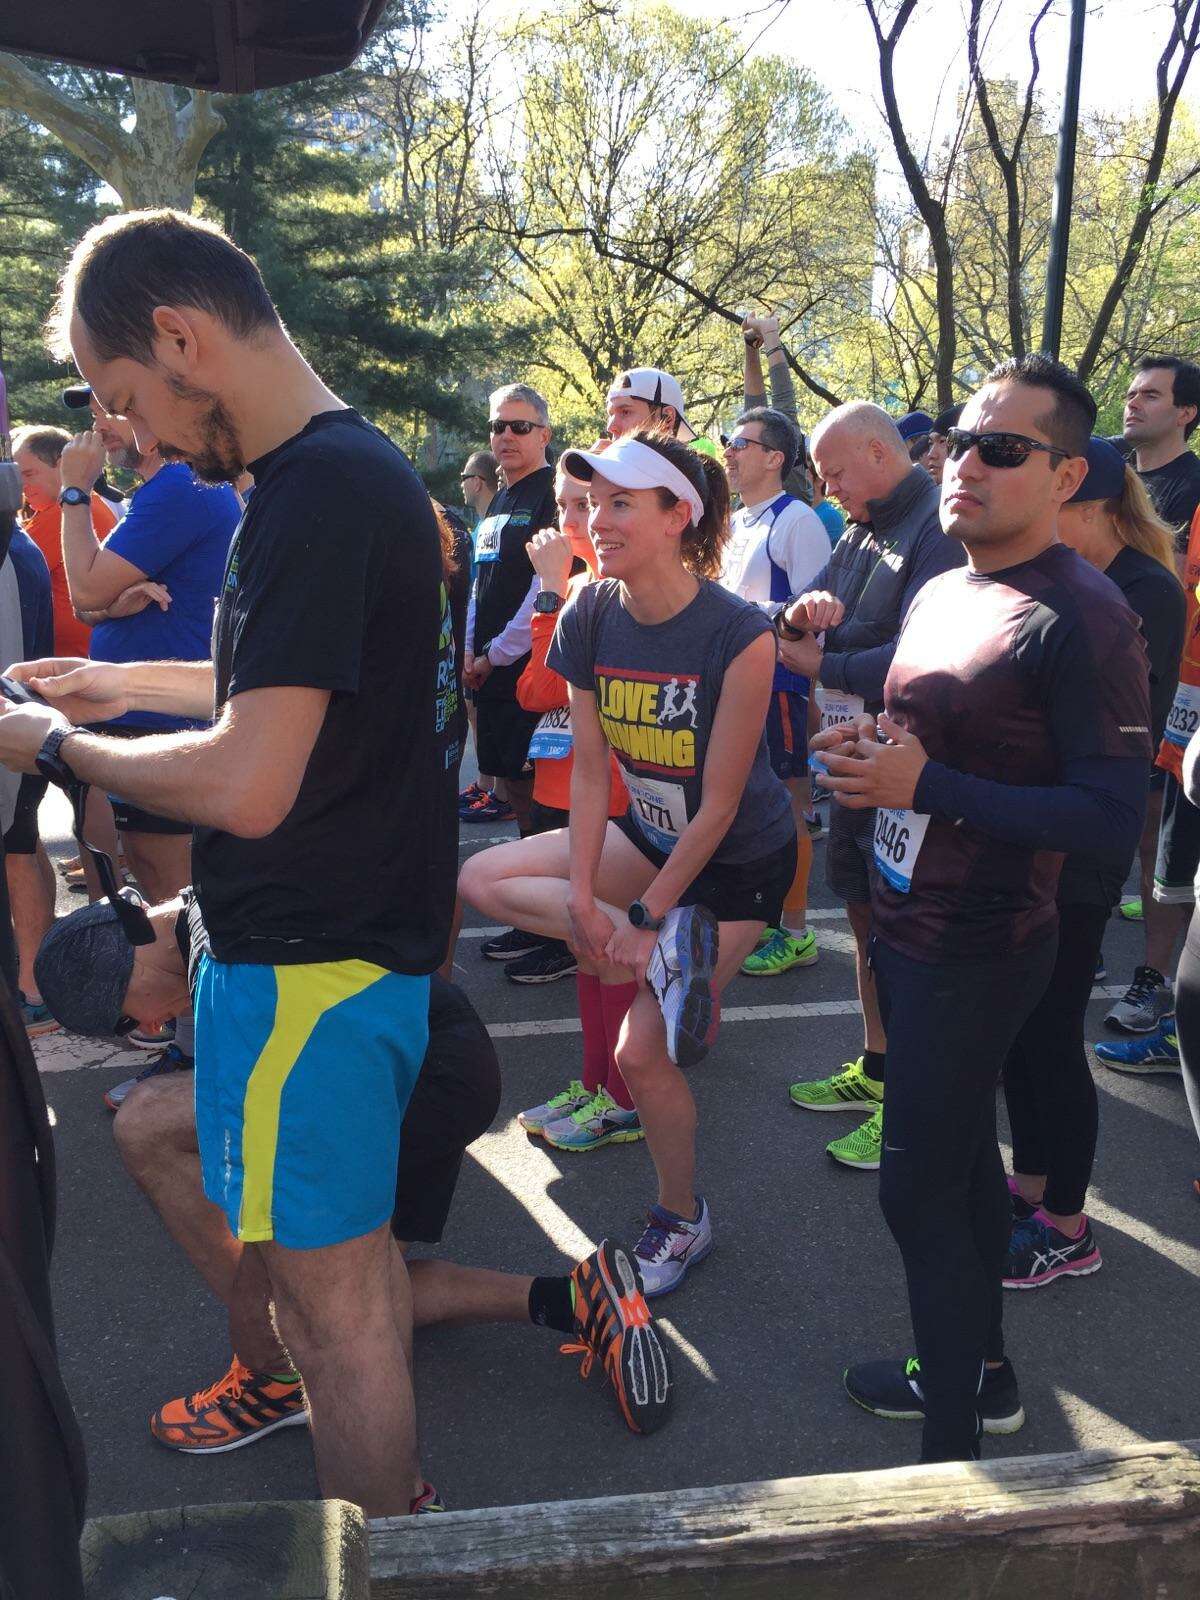 CNBC's Evans taking Fairfield Half Marathon challenge